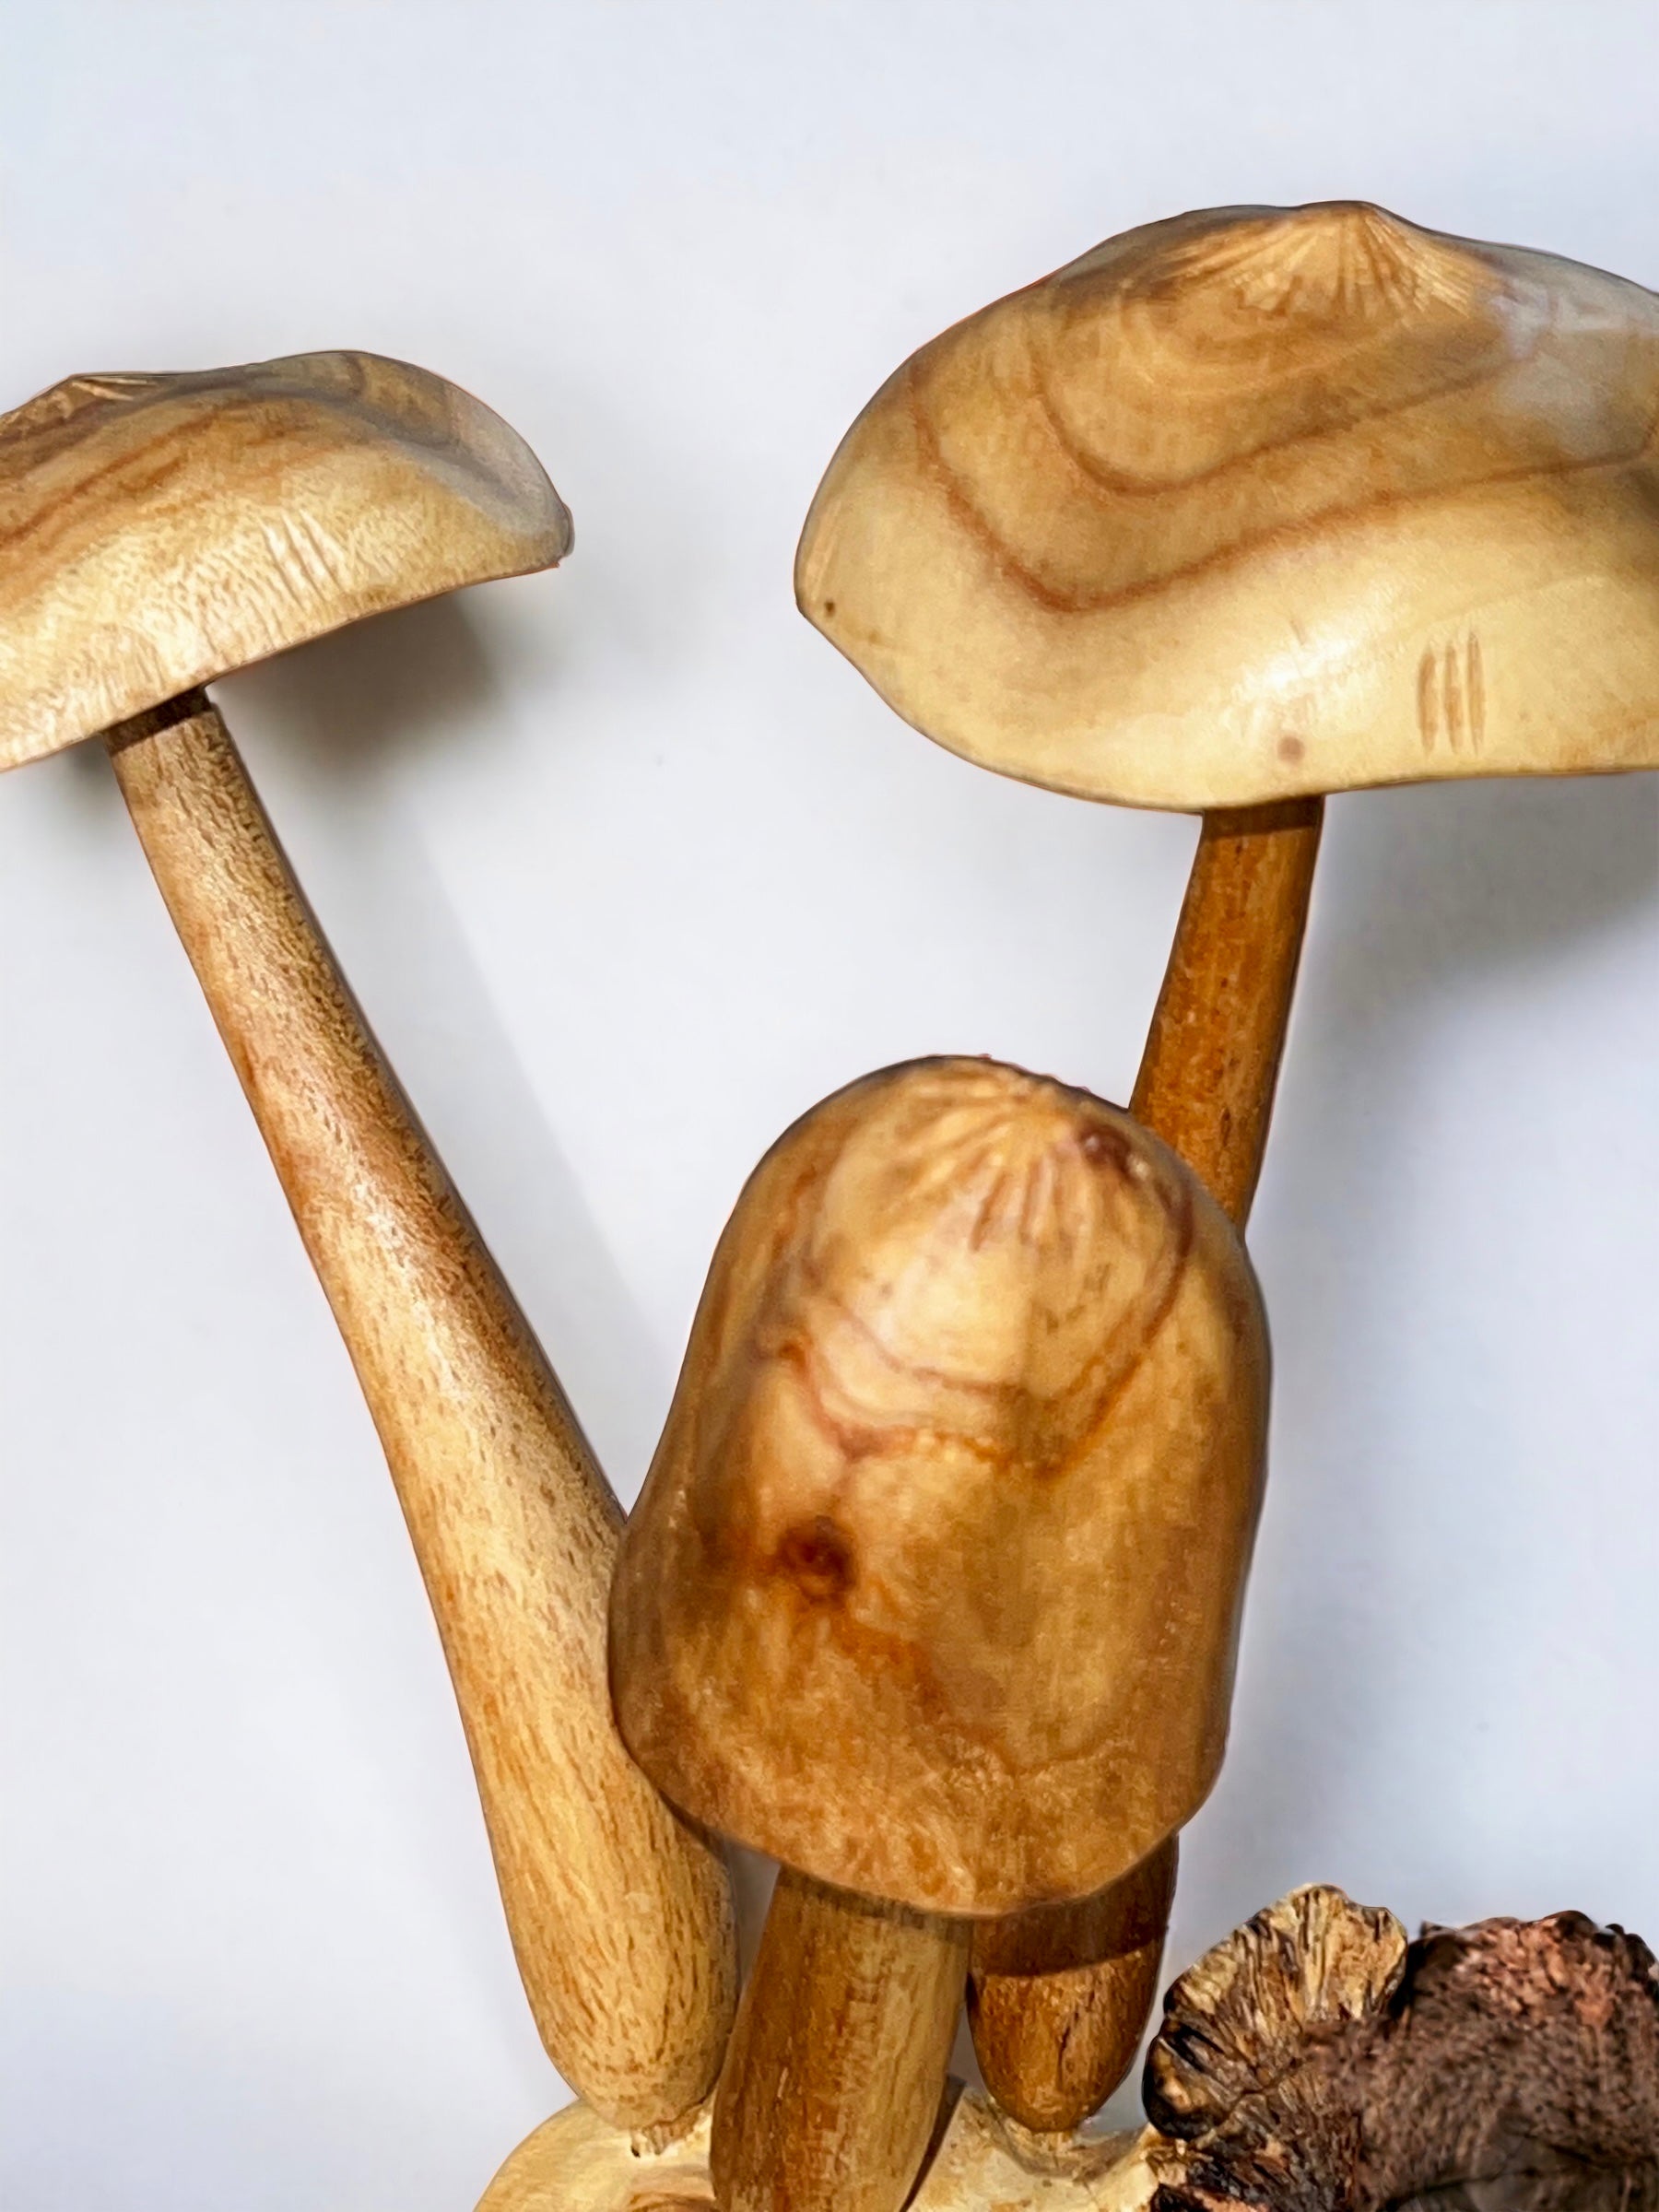 Burl Wood Mushroom 6 Toadstools Sculpture (Vintage)